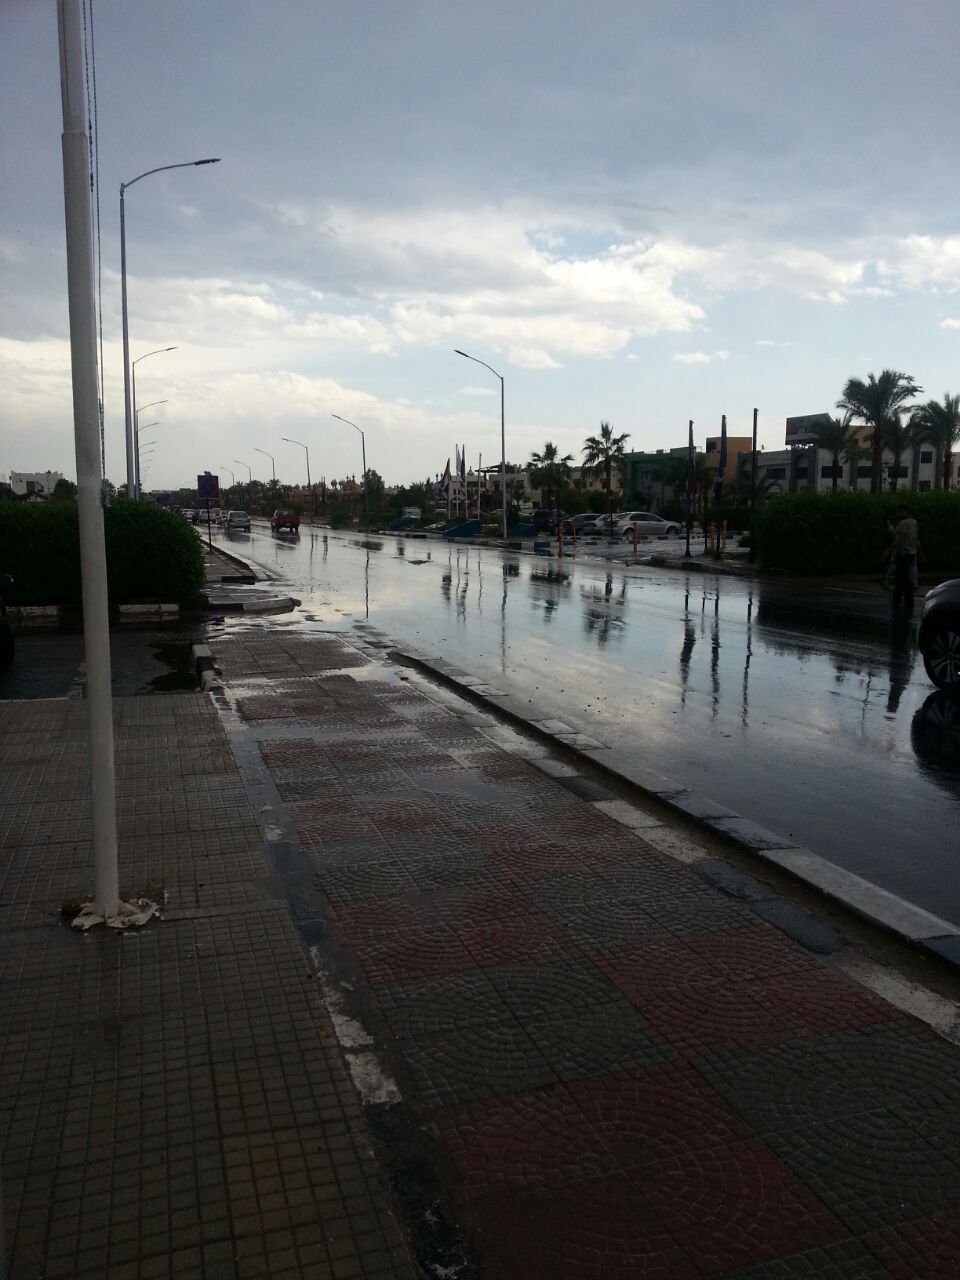 إحدى الشوارع بشرم الشيخ خالية بسبب الأمطار